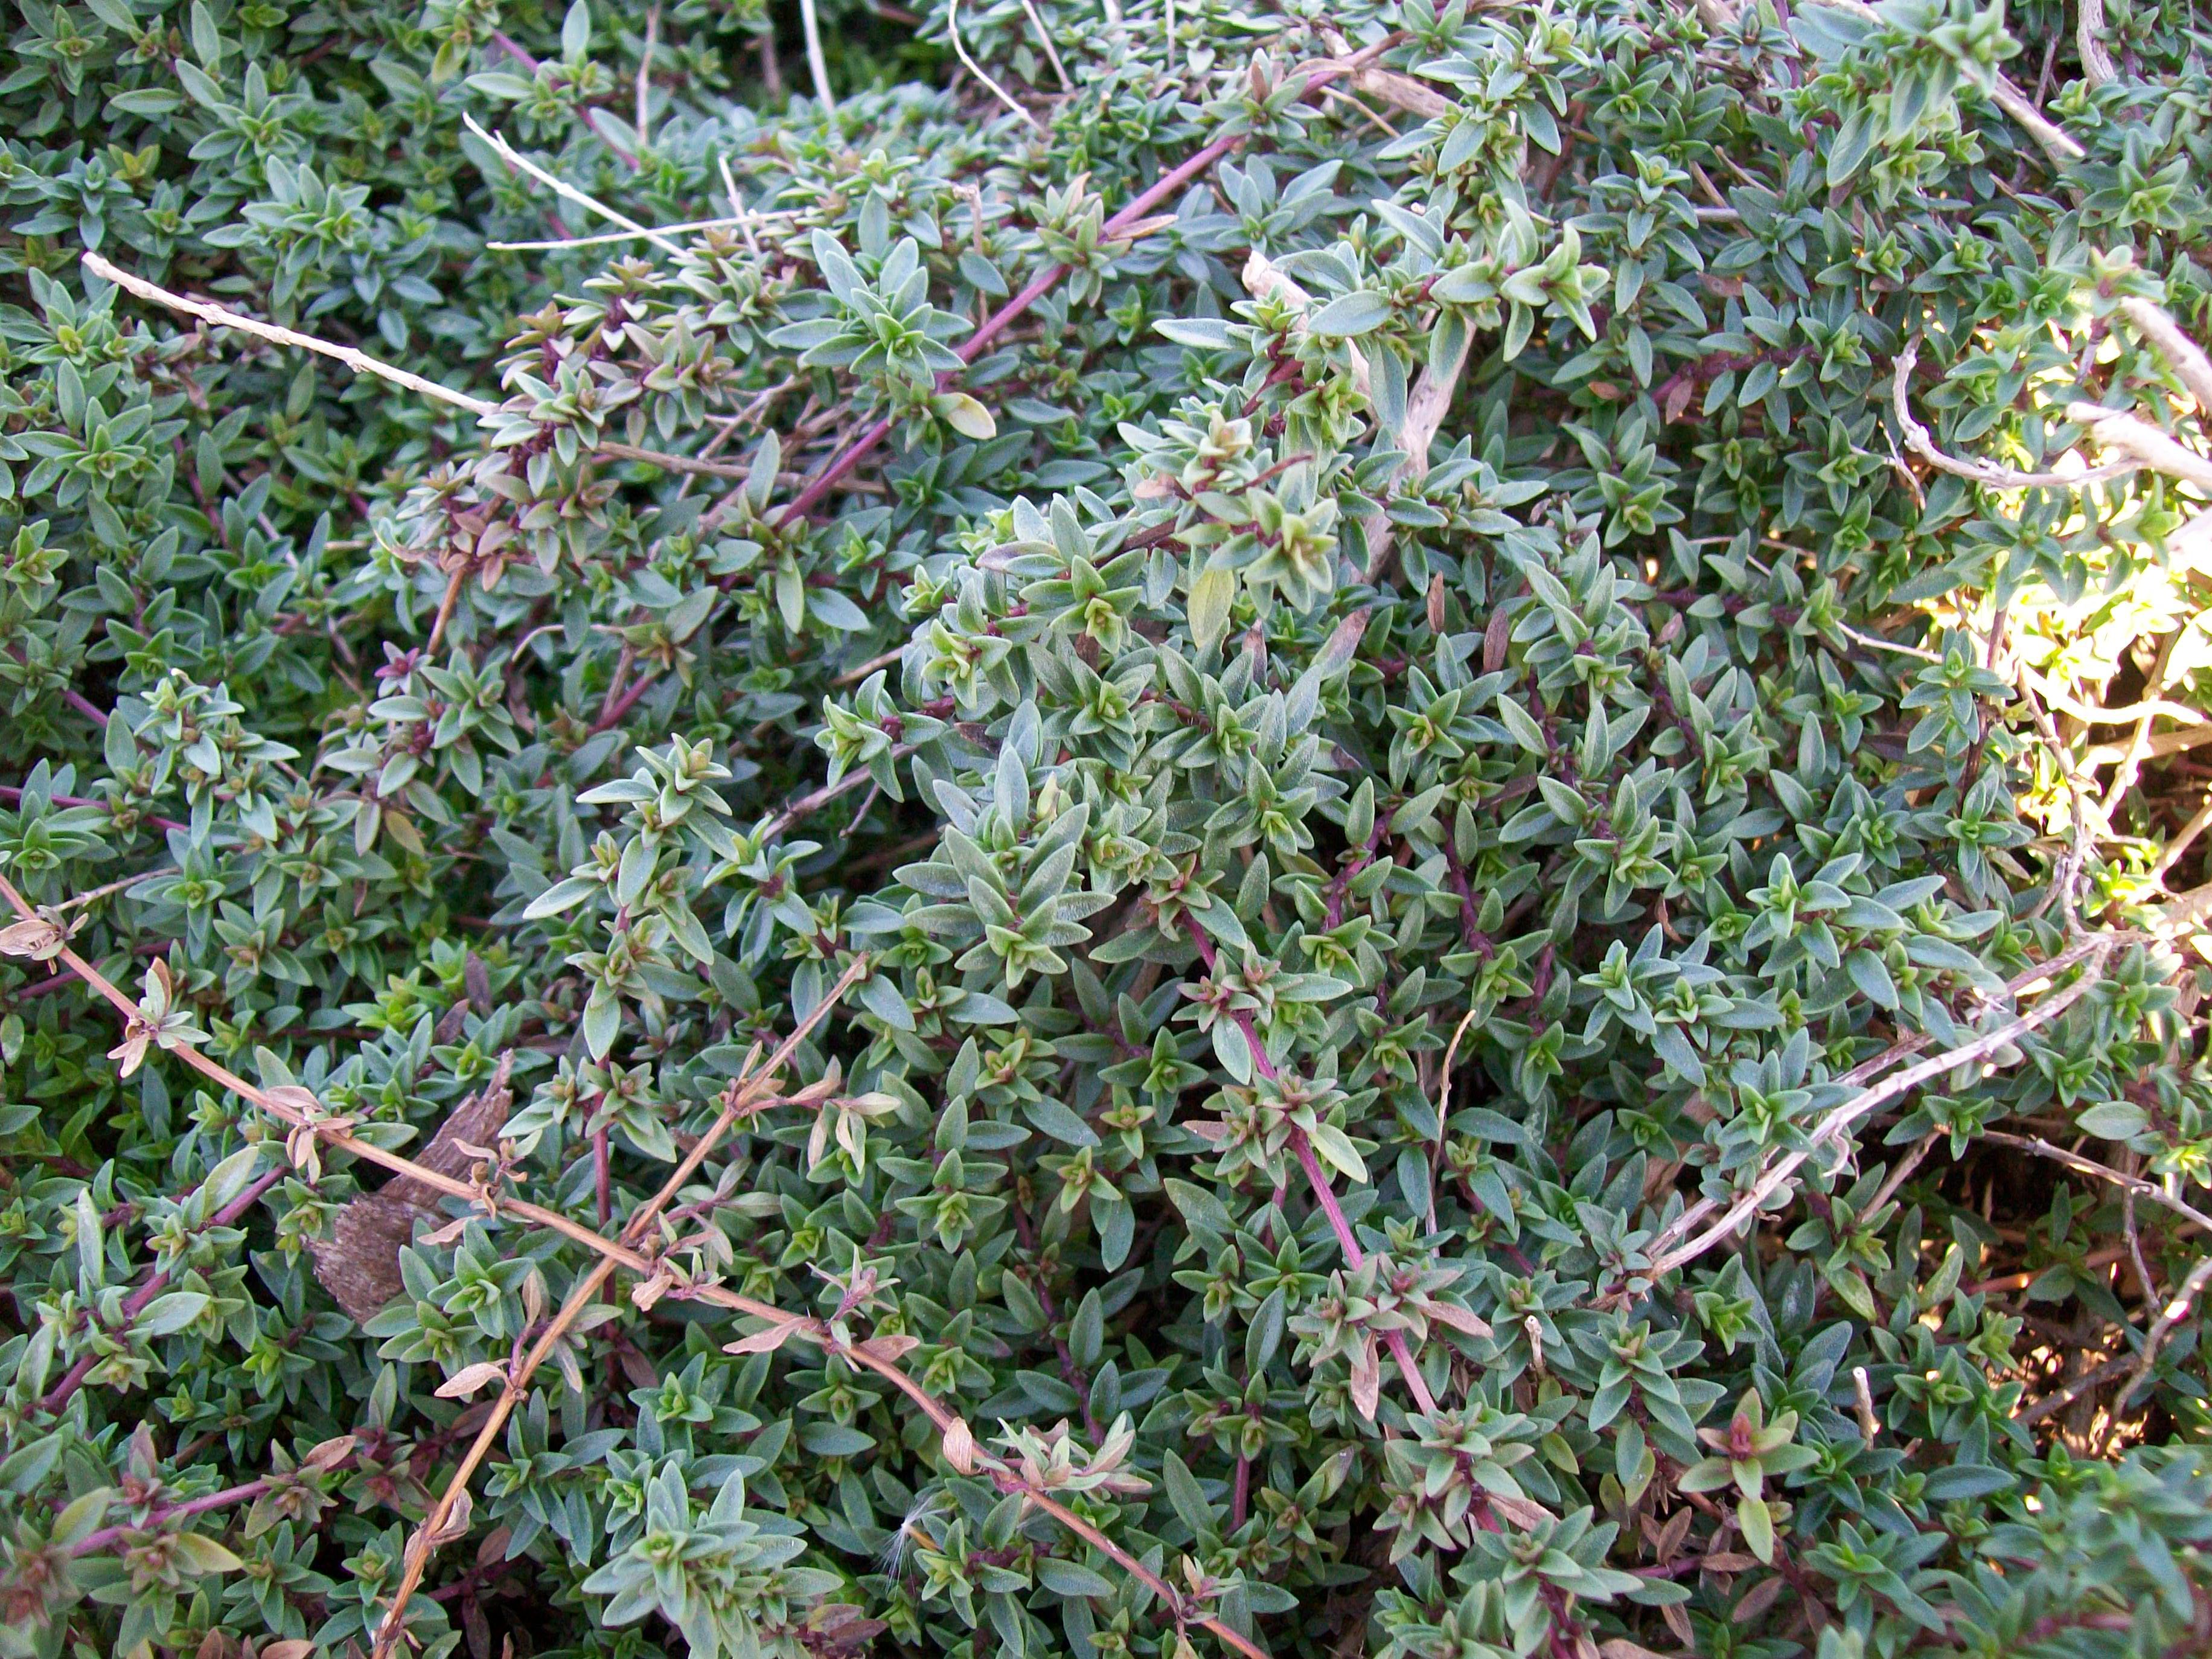 Thymus pulegioides / Oregano Thyme, Lemon Thyme